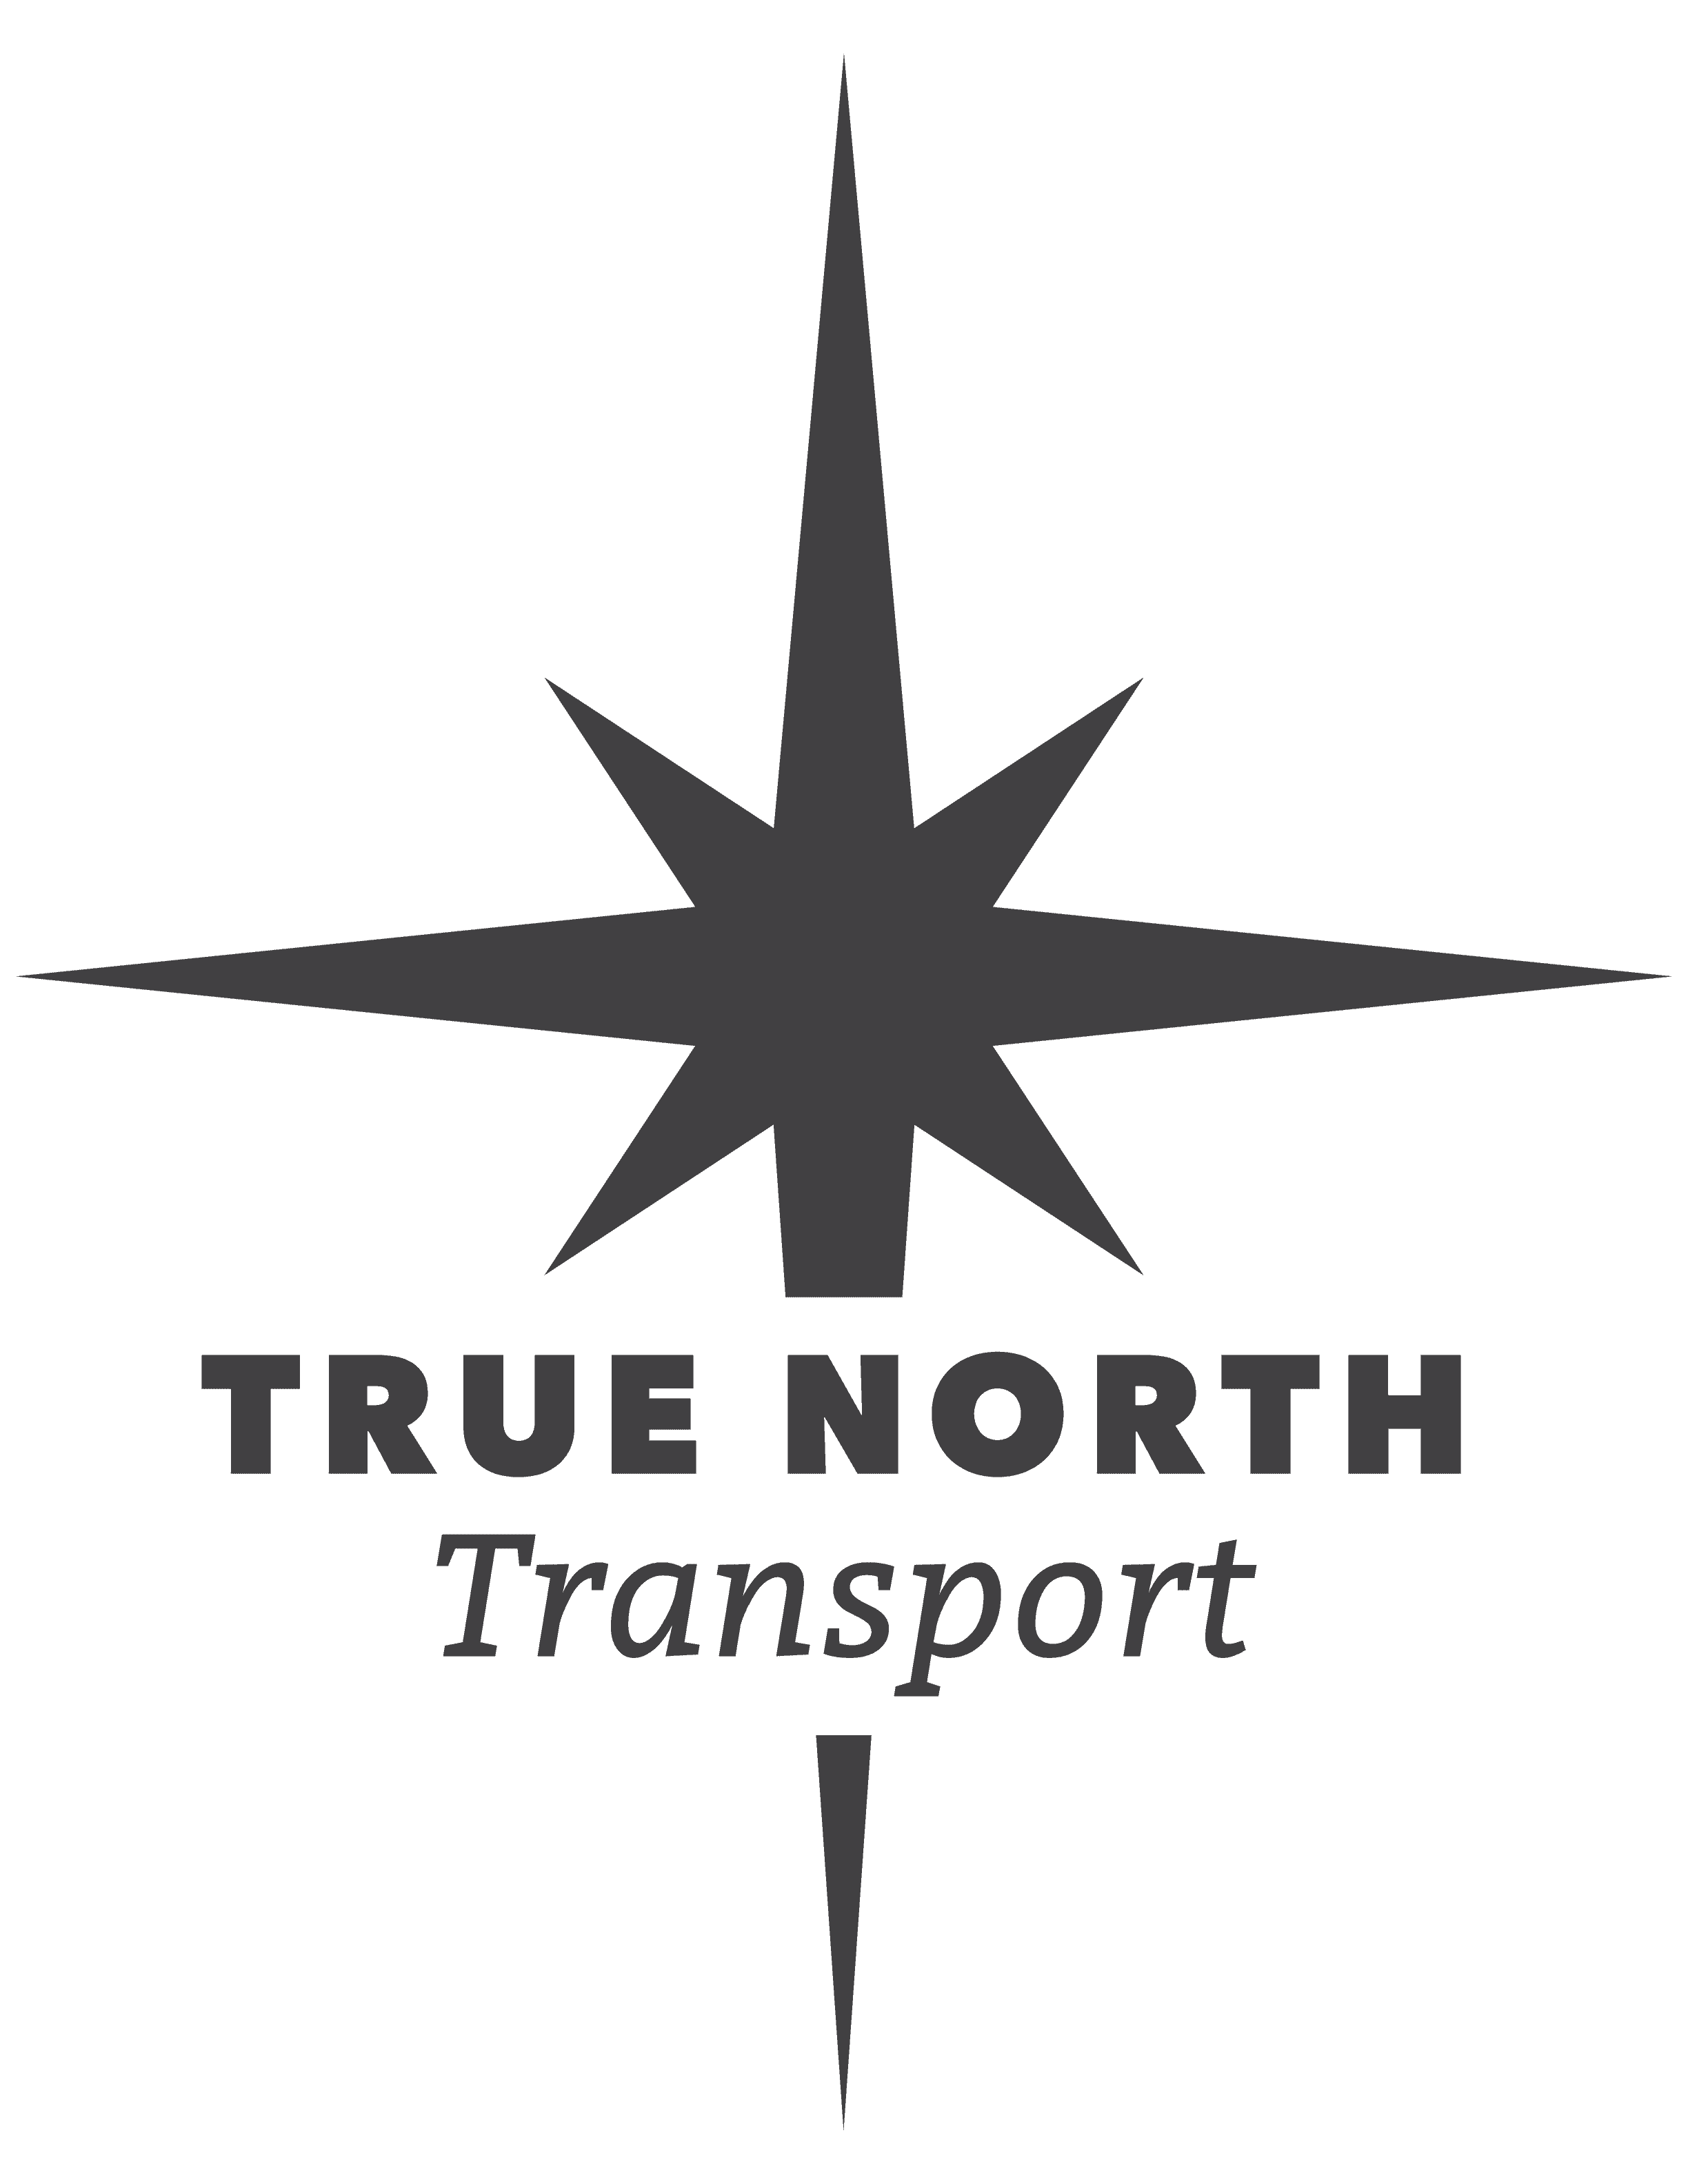 True North Transport's logo